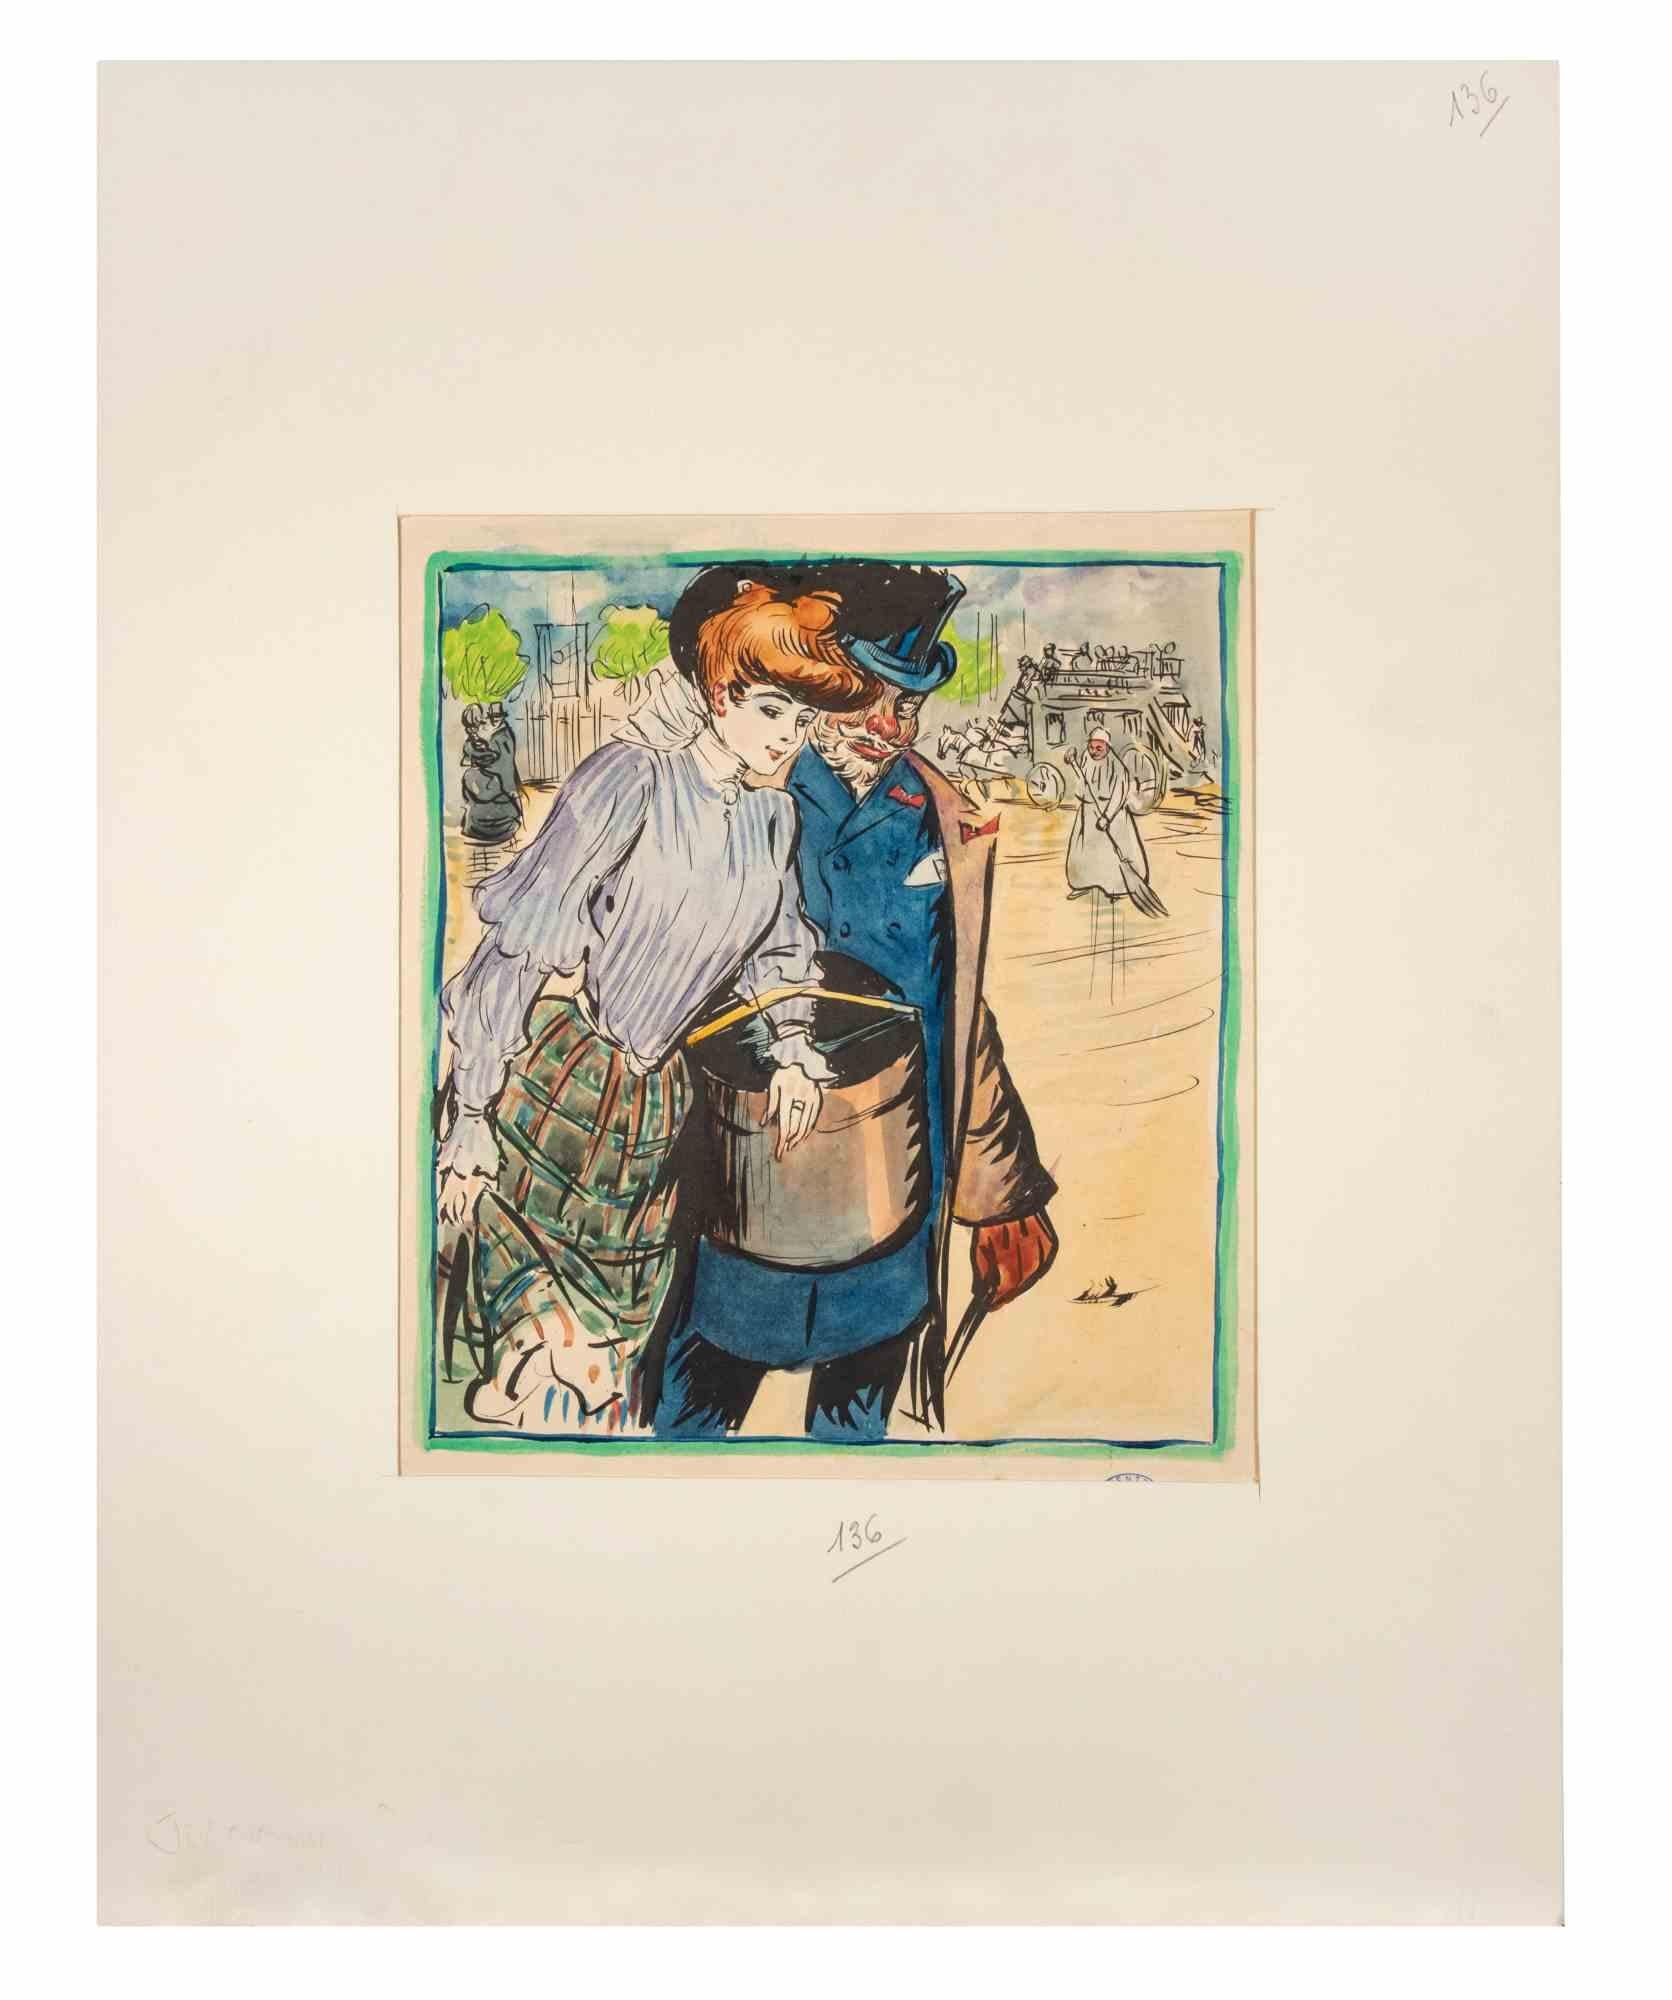 Springtime ist ein Tusche- und Aquarellbild, das Pierre Georges Jeanniot 1905 für die Zeitschrift "Rire" schuf.

Guter Zustand auf gelbem Papier.

Stempel signiert in der unteren rechten Ecke.

Dazu gehört ein cremefarbenes Passepartout aus Karton